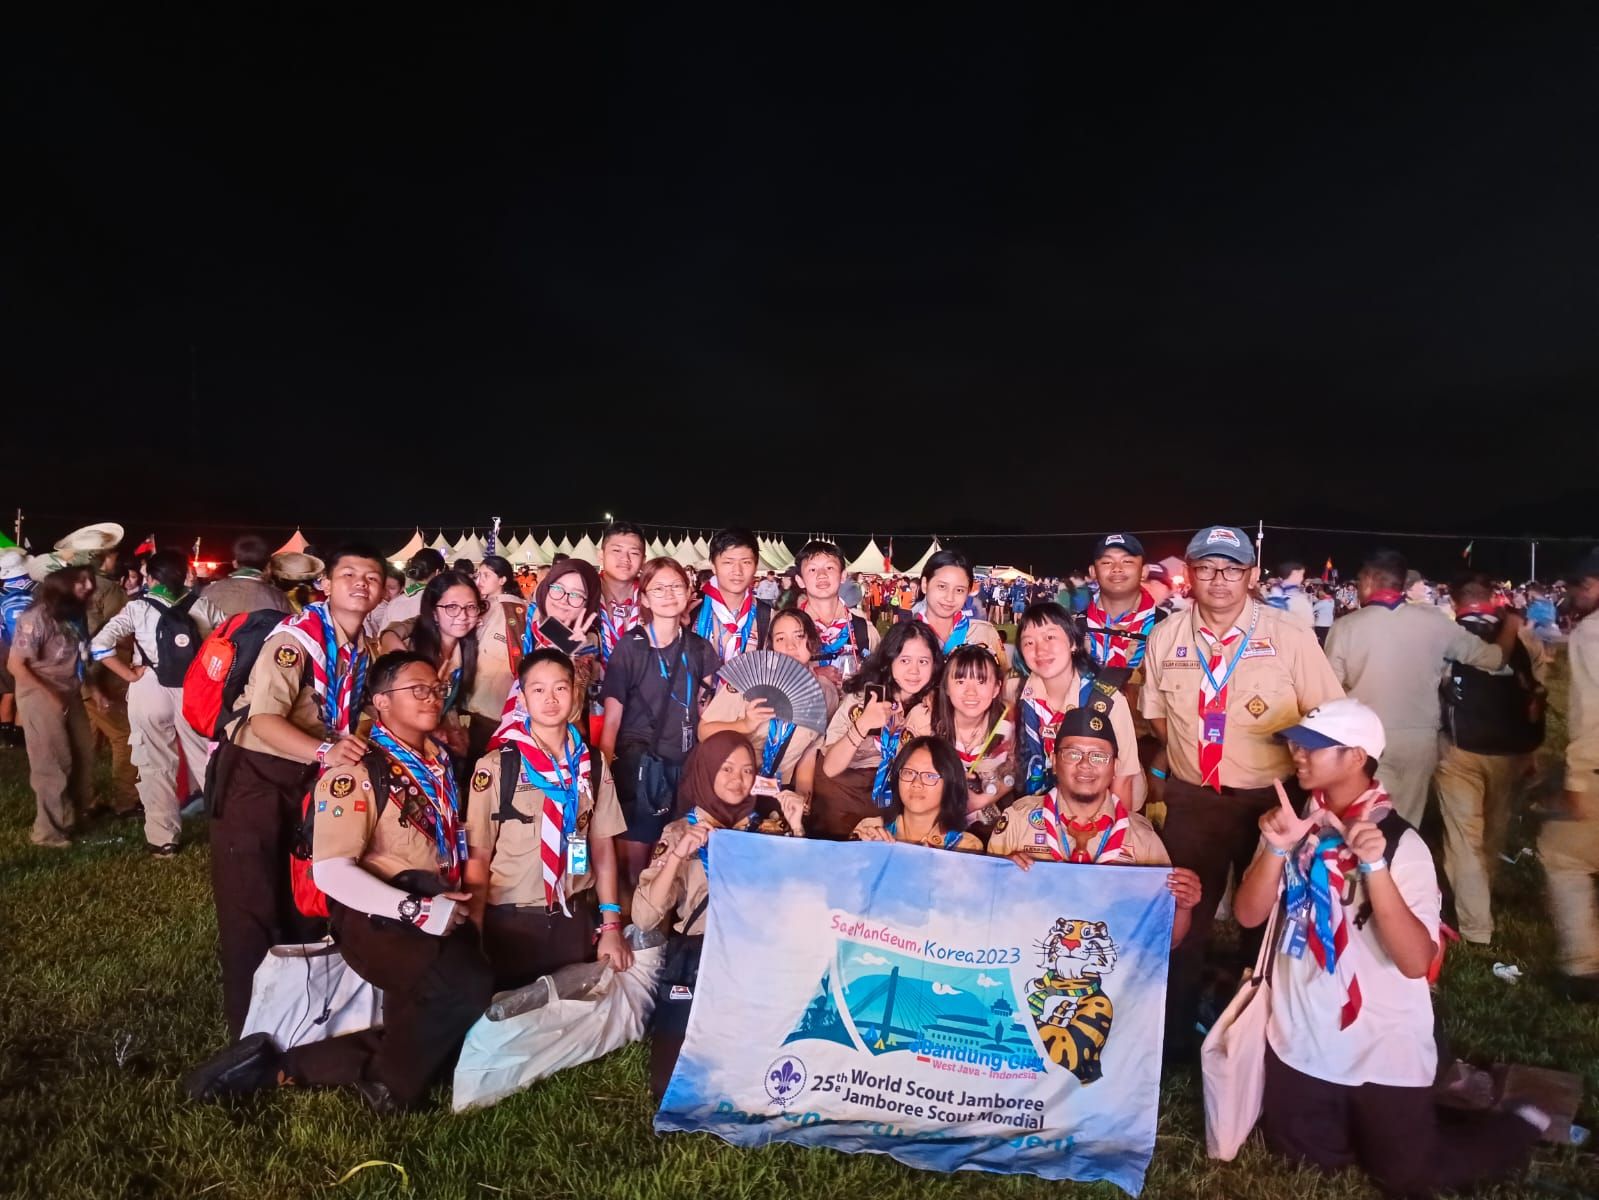 sebanyak 56 anggota Pramuka Kota Bandung akan tampil di World Scout Jamboree di Saemangeum Korea